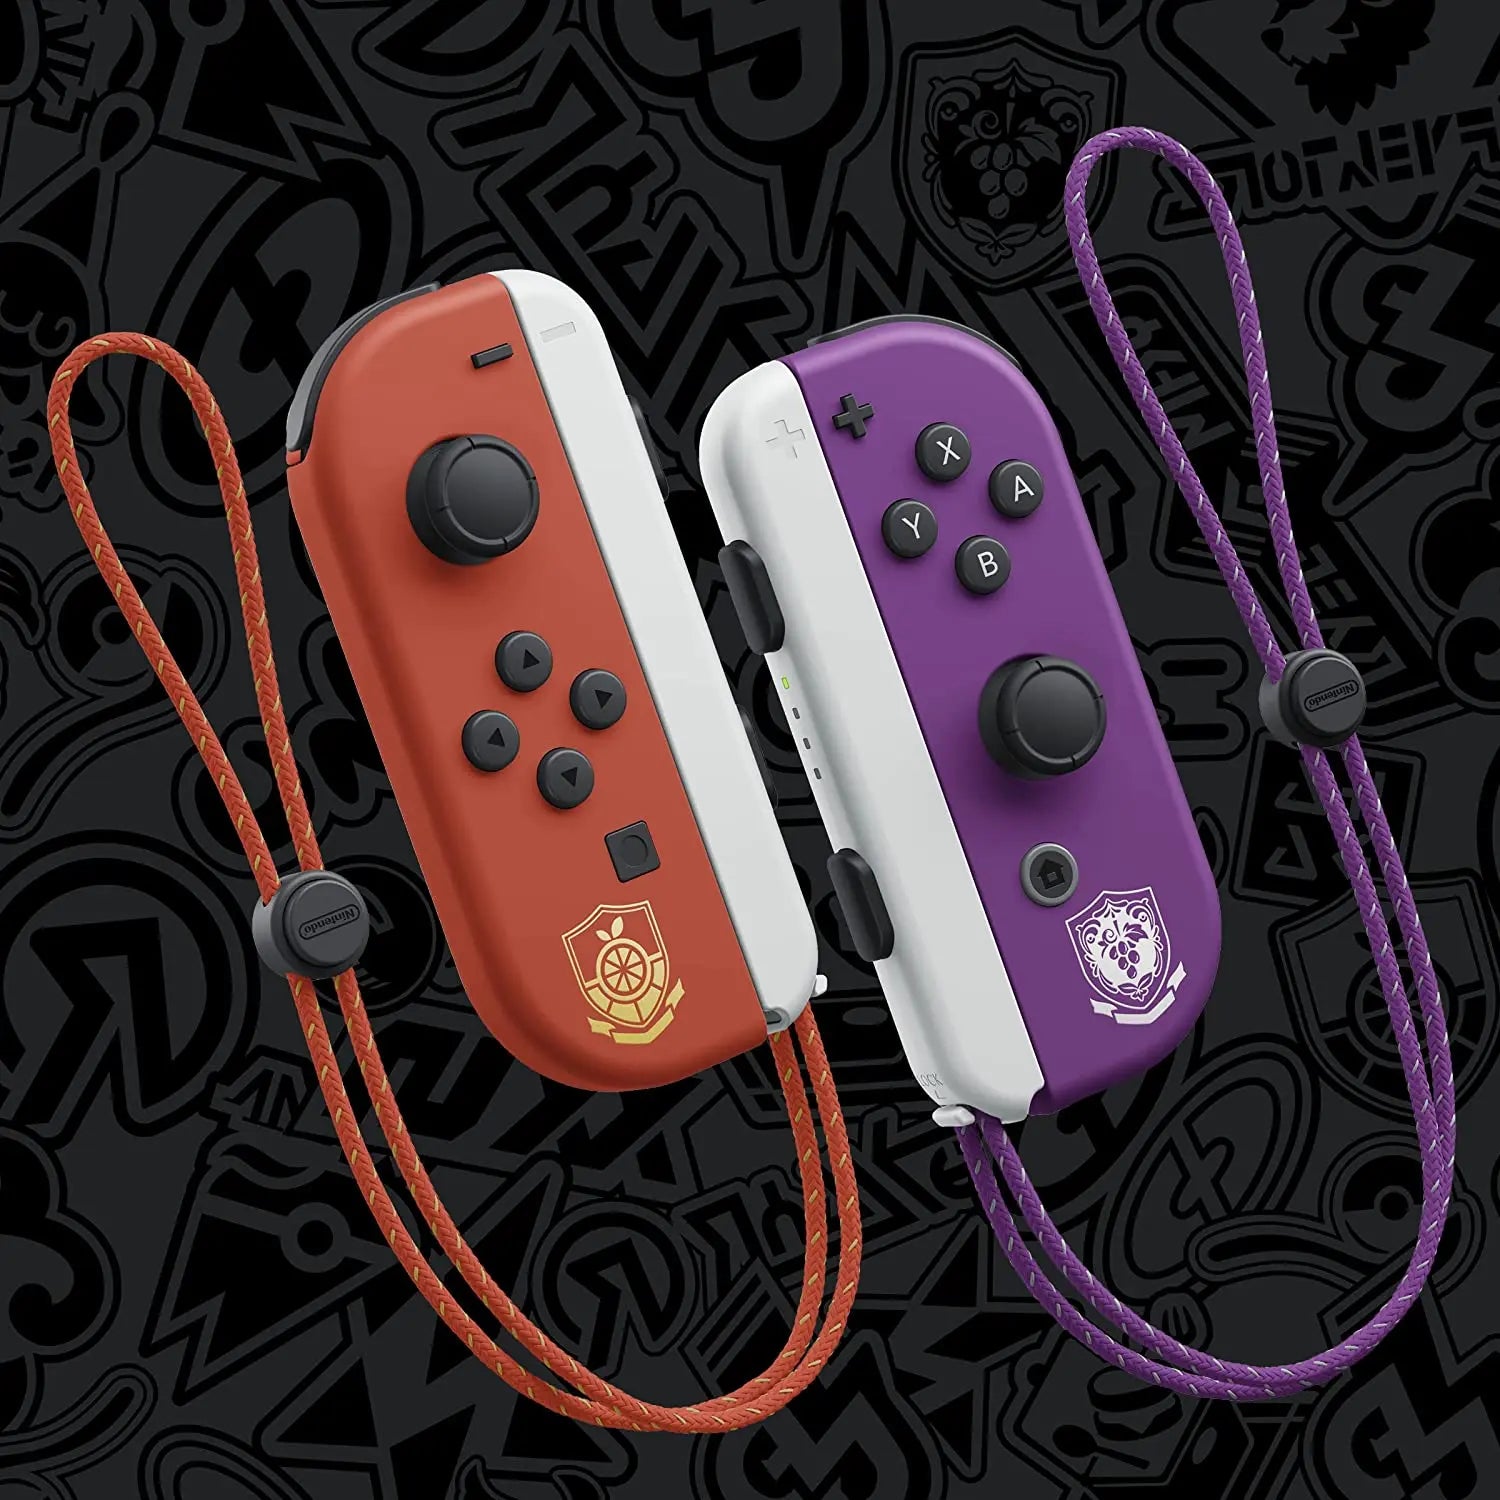 Nintendo Console Switch (Modèle OLED) avec Station d'Accueil/Manettes  Joy-Con Blanches : : Jeux vidéo